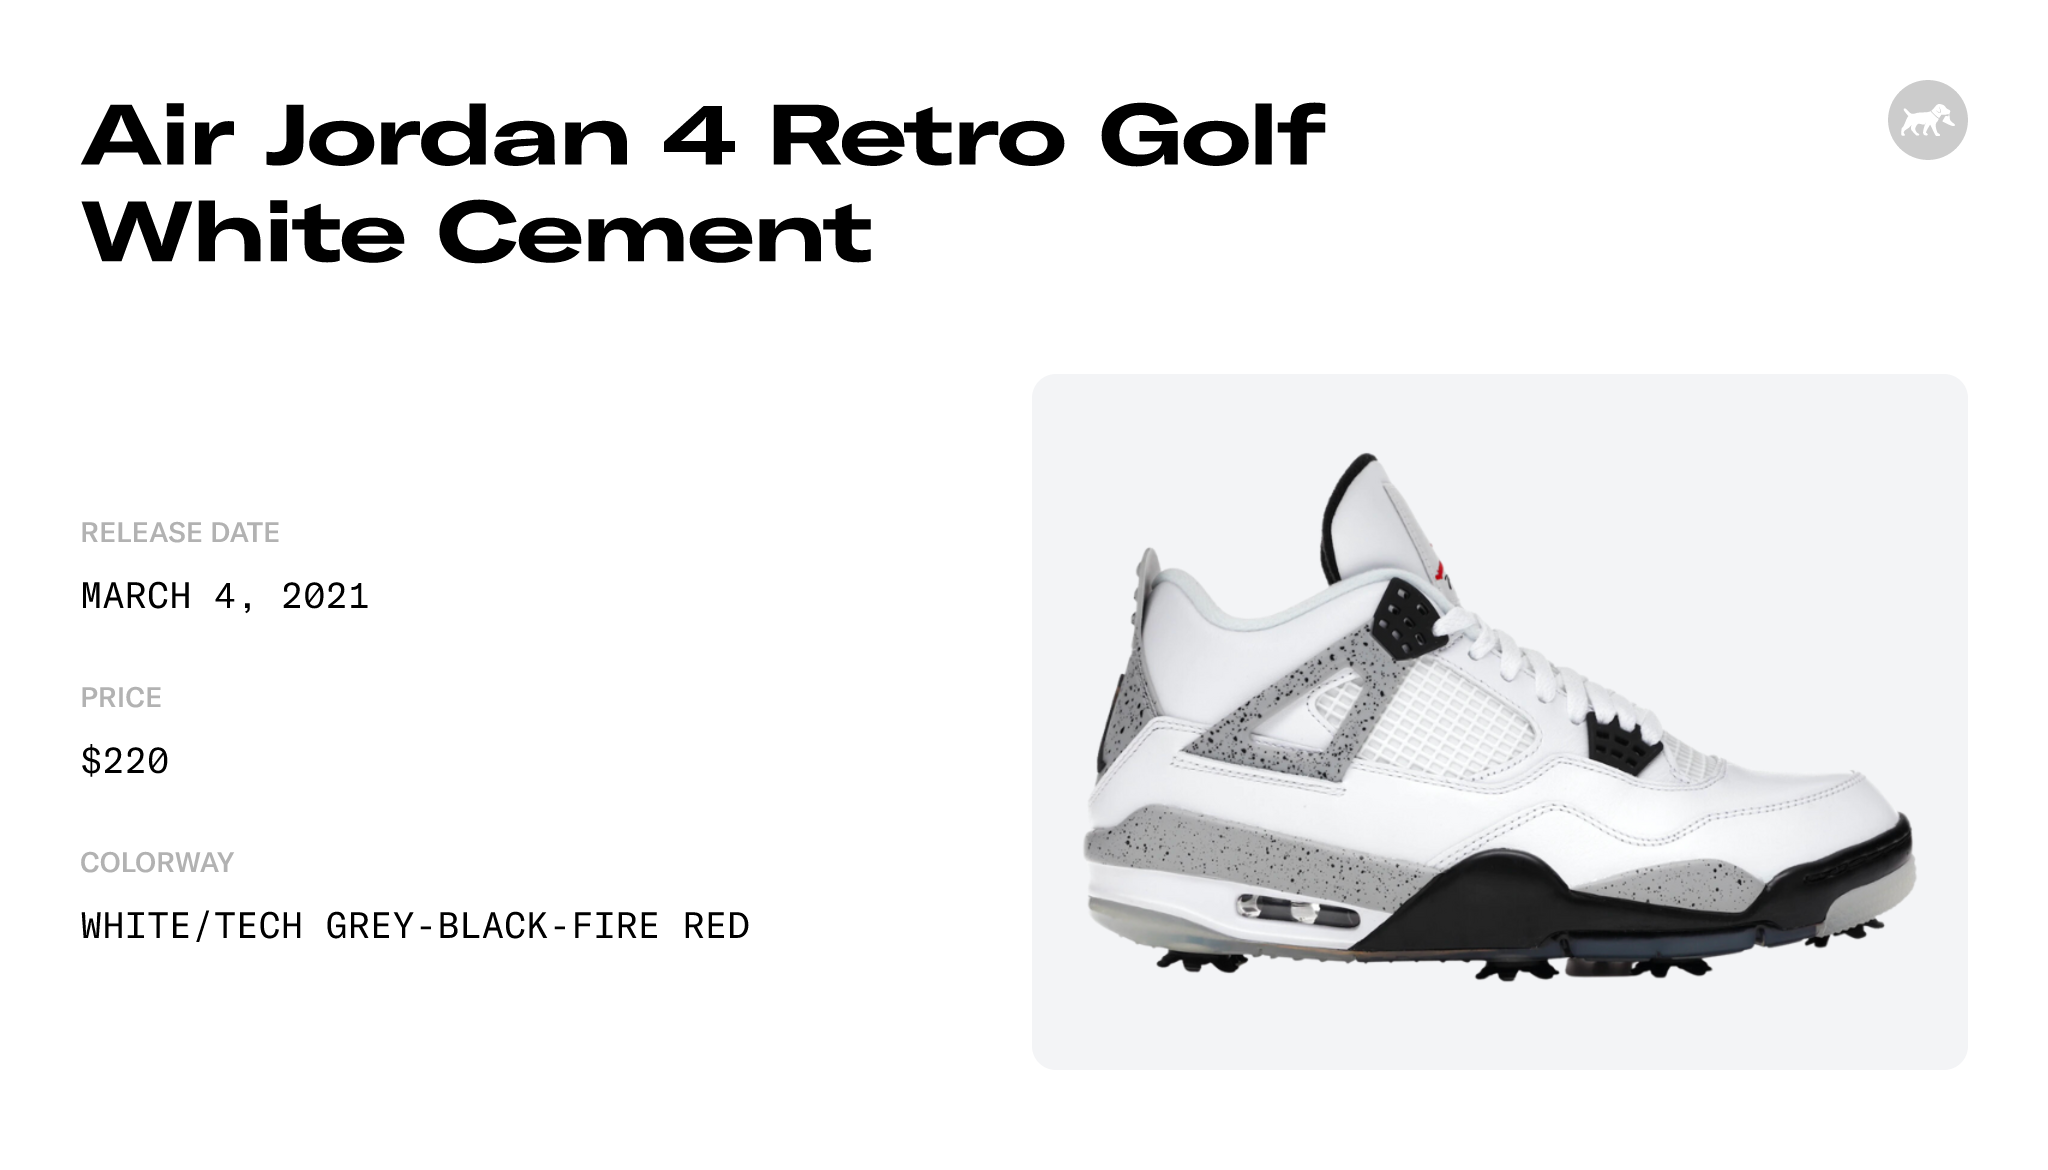 Air Jordan 4 Retro Golf White Cement - CU9981-100 Raffles and Release Date